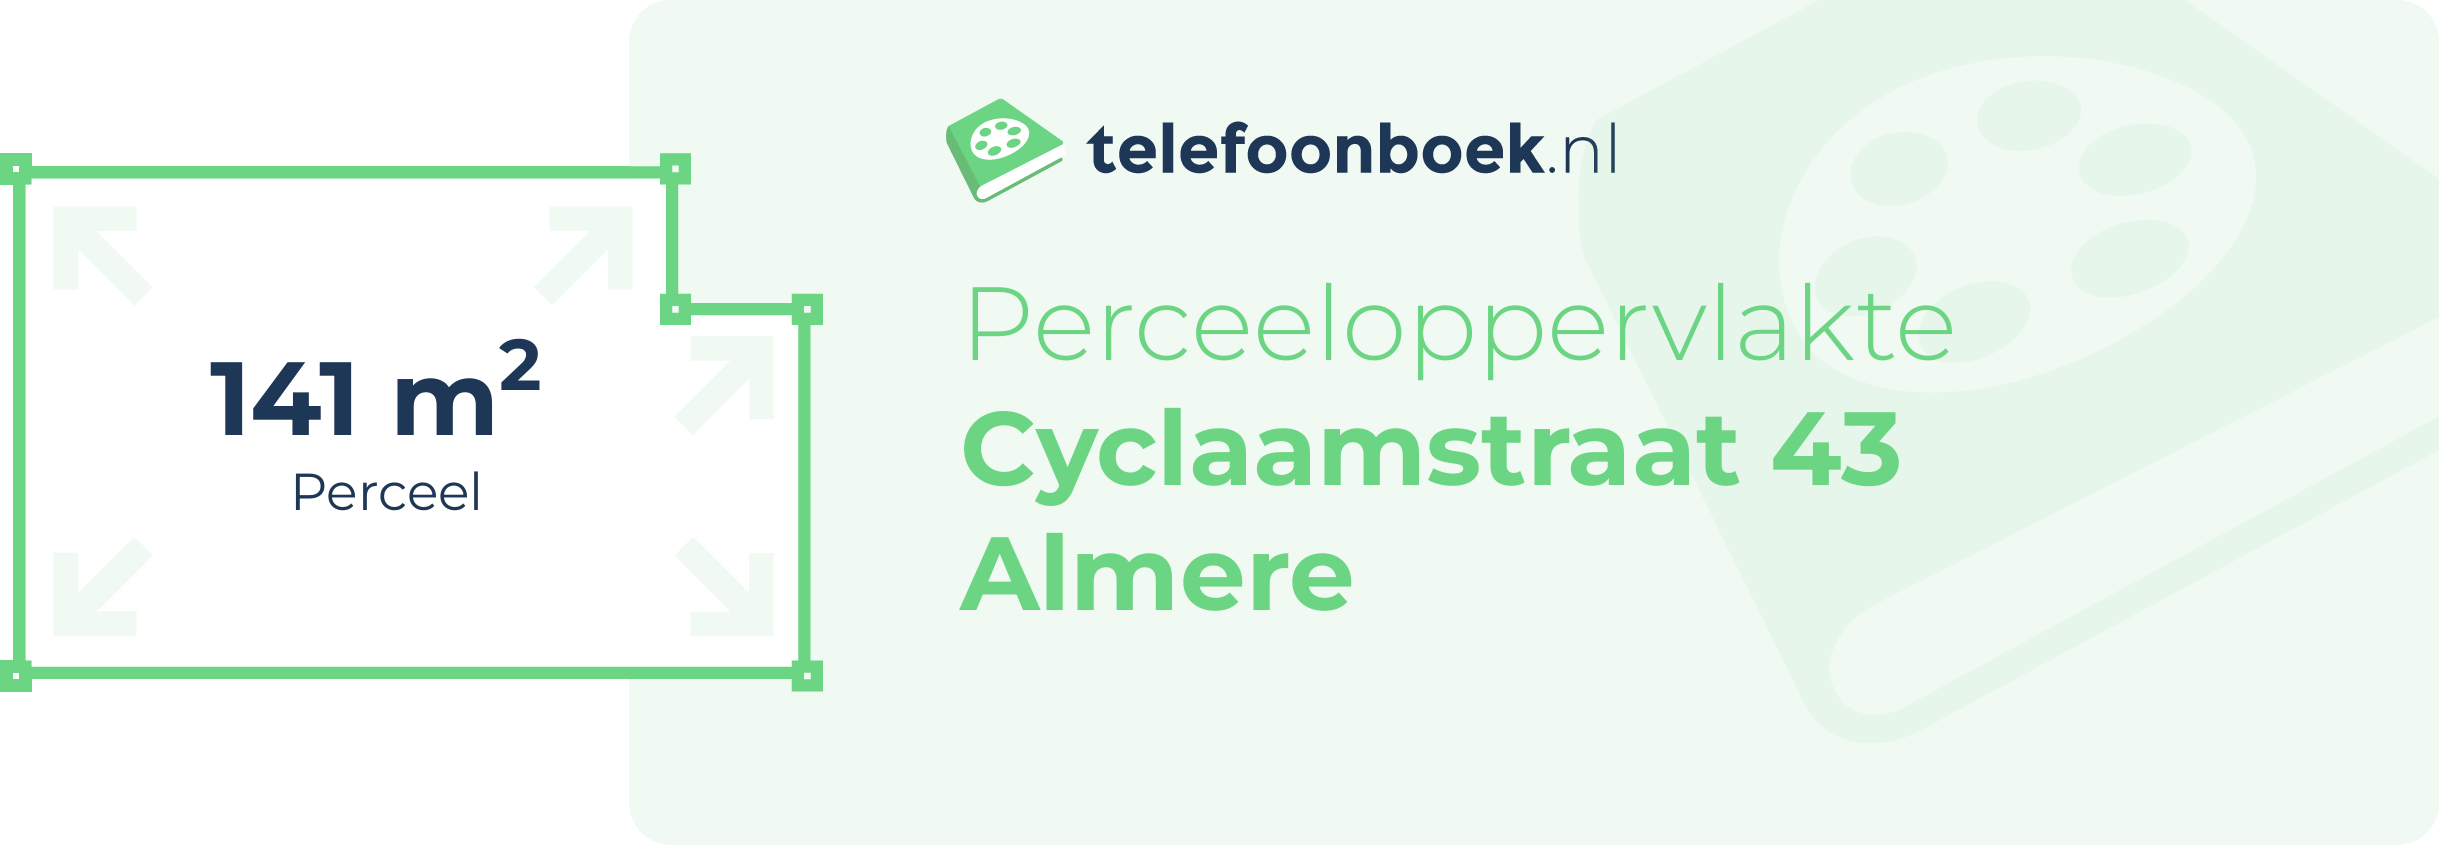 Perceeloppervlakte Cyclaamstraat 43 Almere